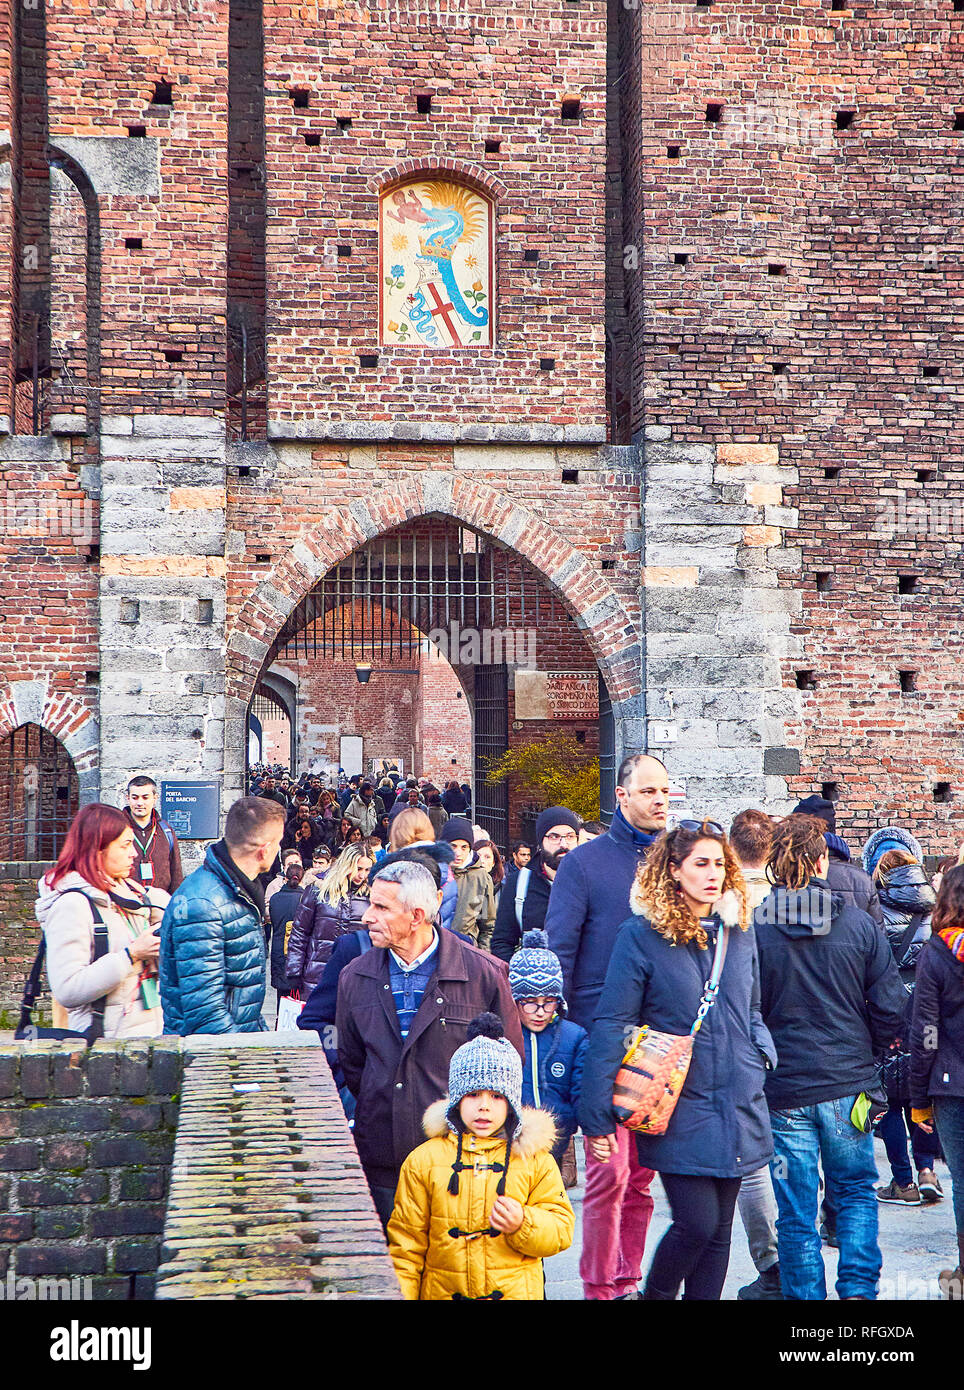 Turisti attraversando una delle porte del Castello Sforzesco, Castello Sforzesco, con lo stemma dei Visconti sui passaruota. Milano, lombardia, italia. Foto Stock